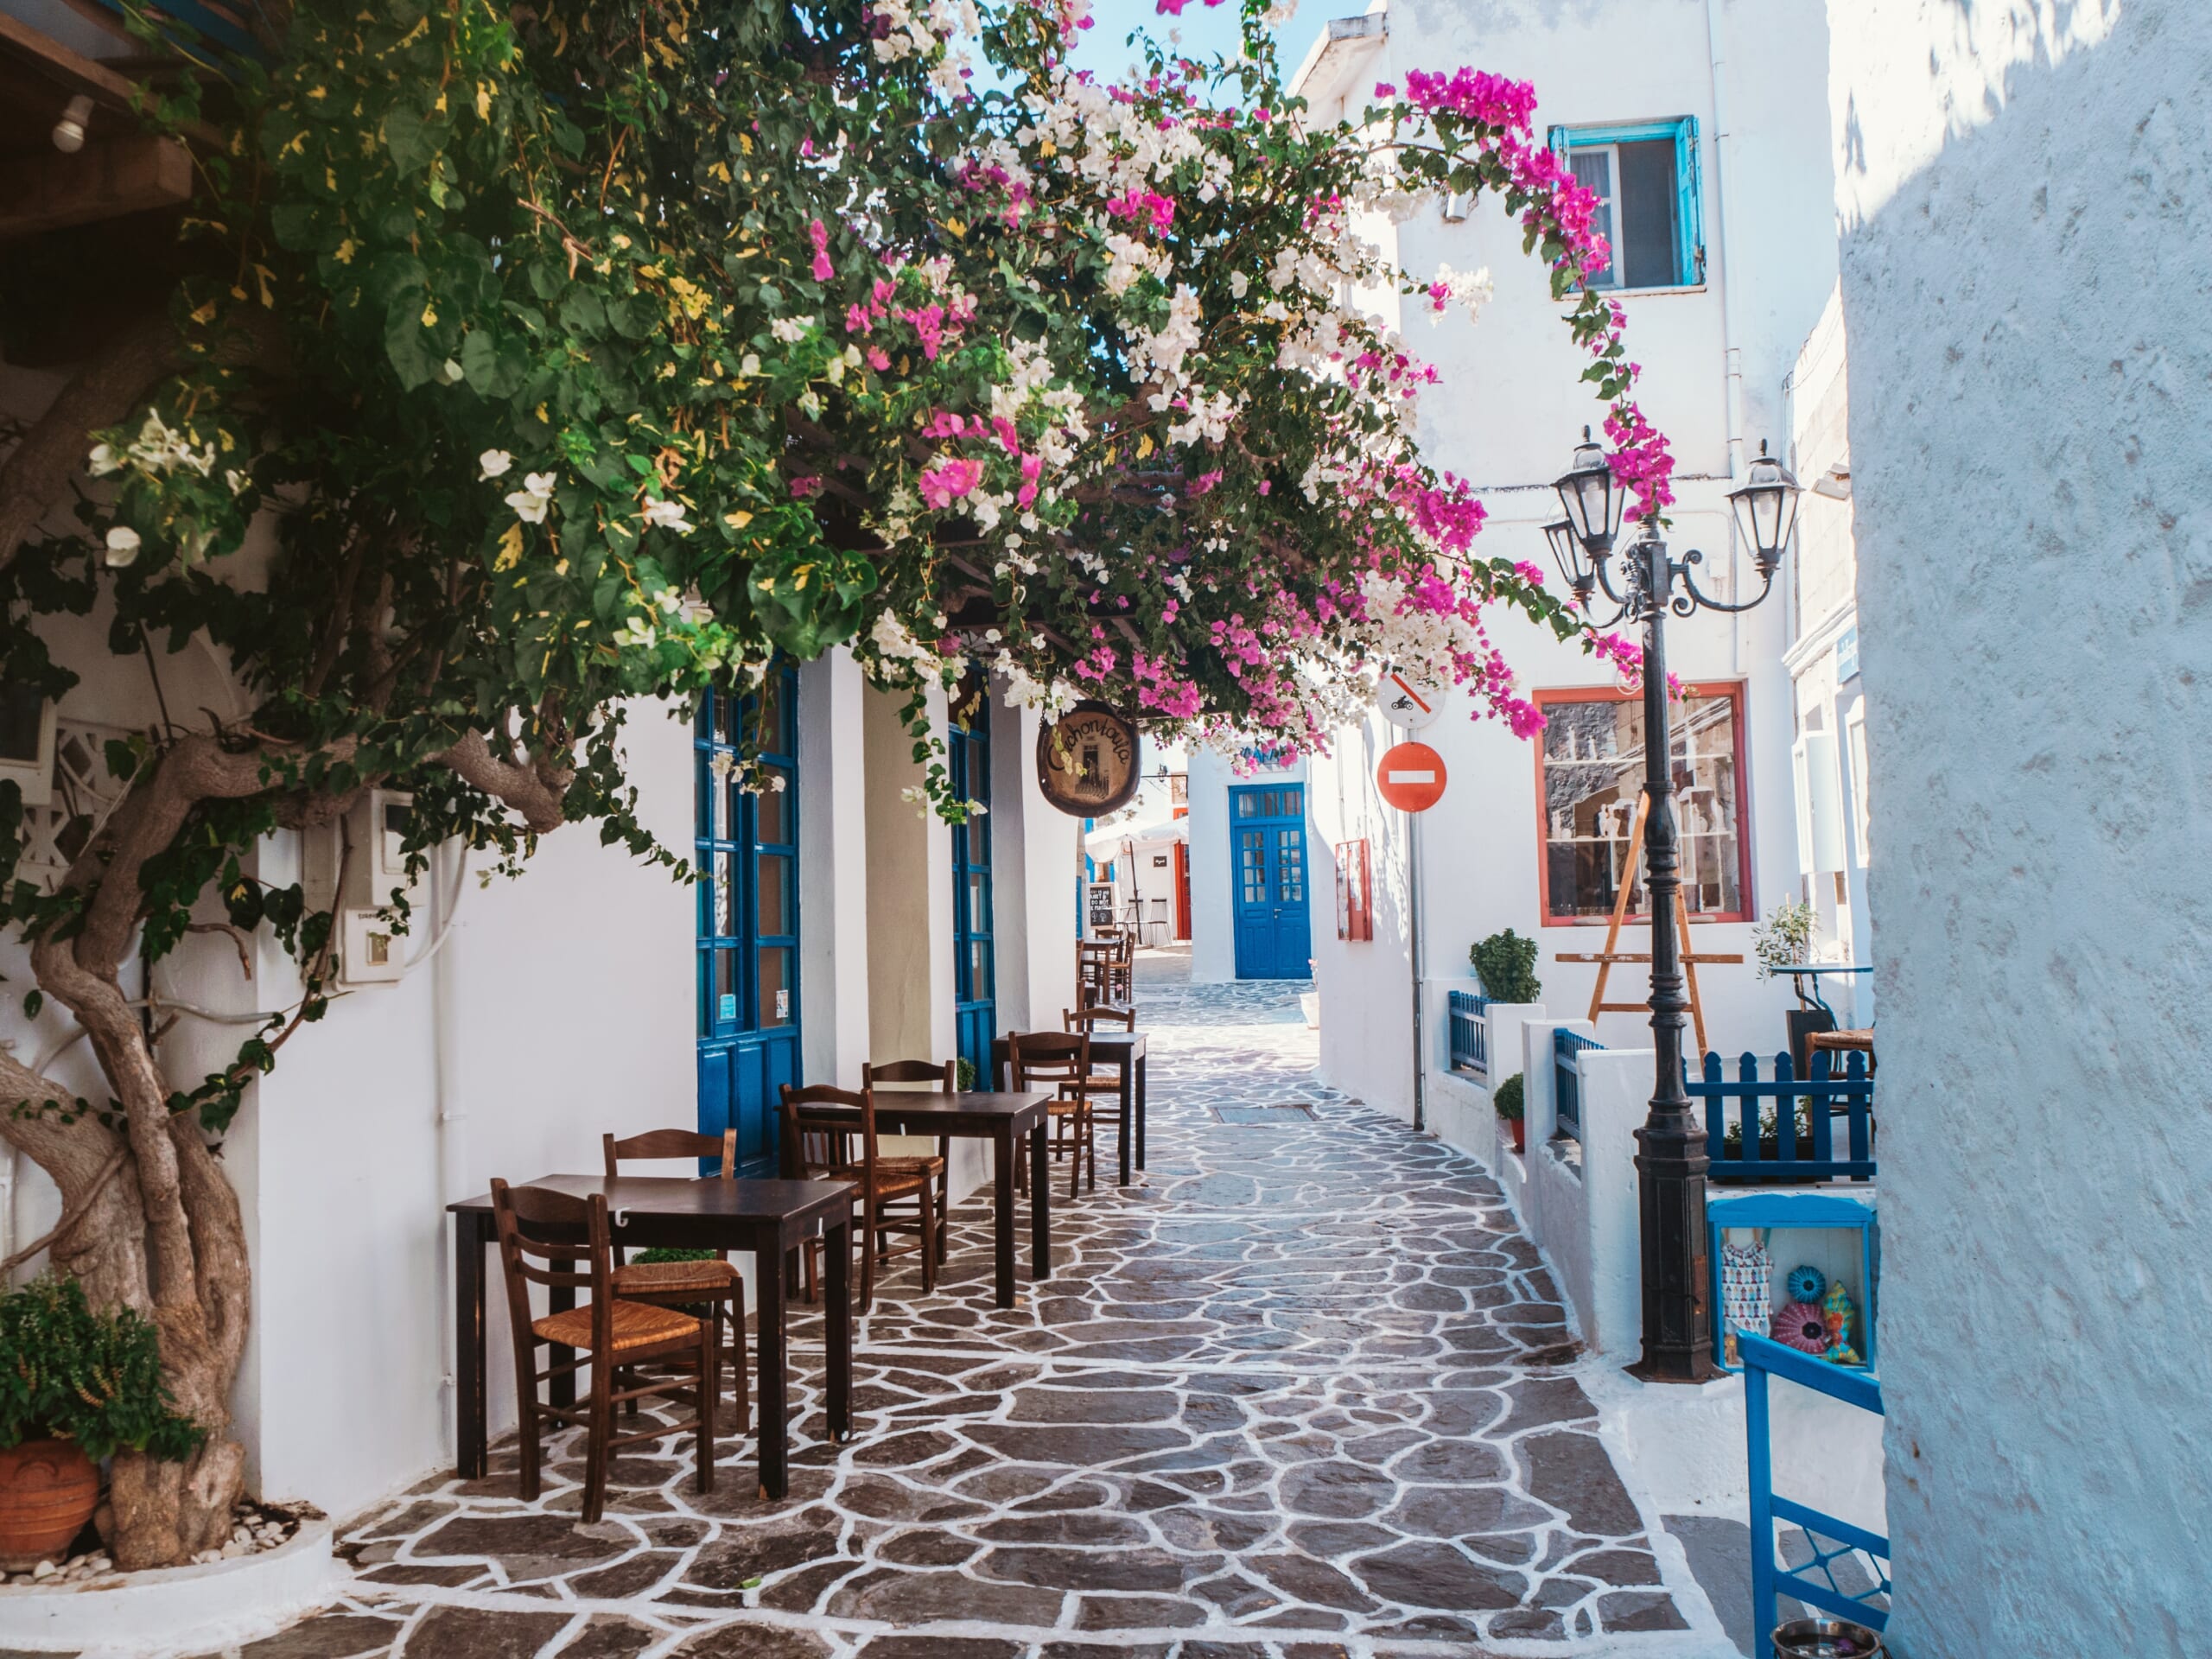 Greece, Milos, Photo by Johnny Africa on Unsplash